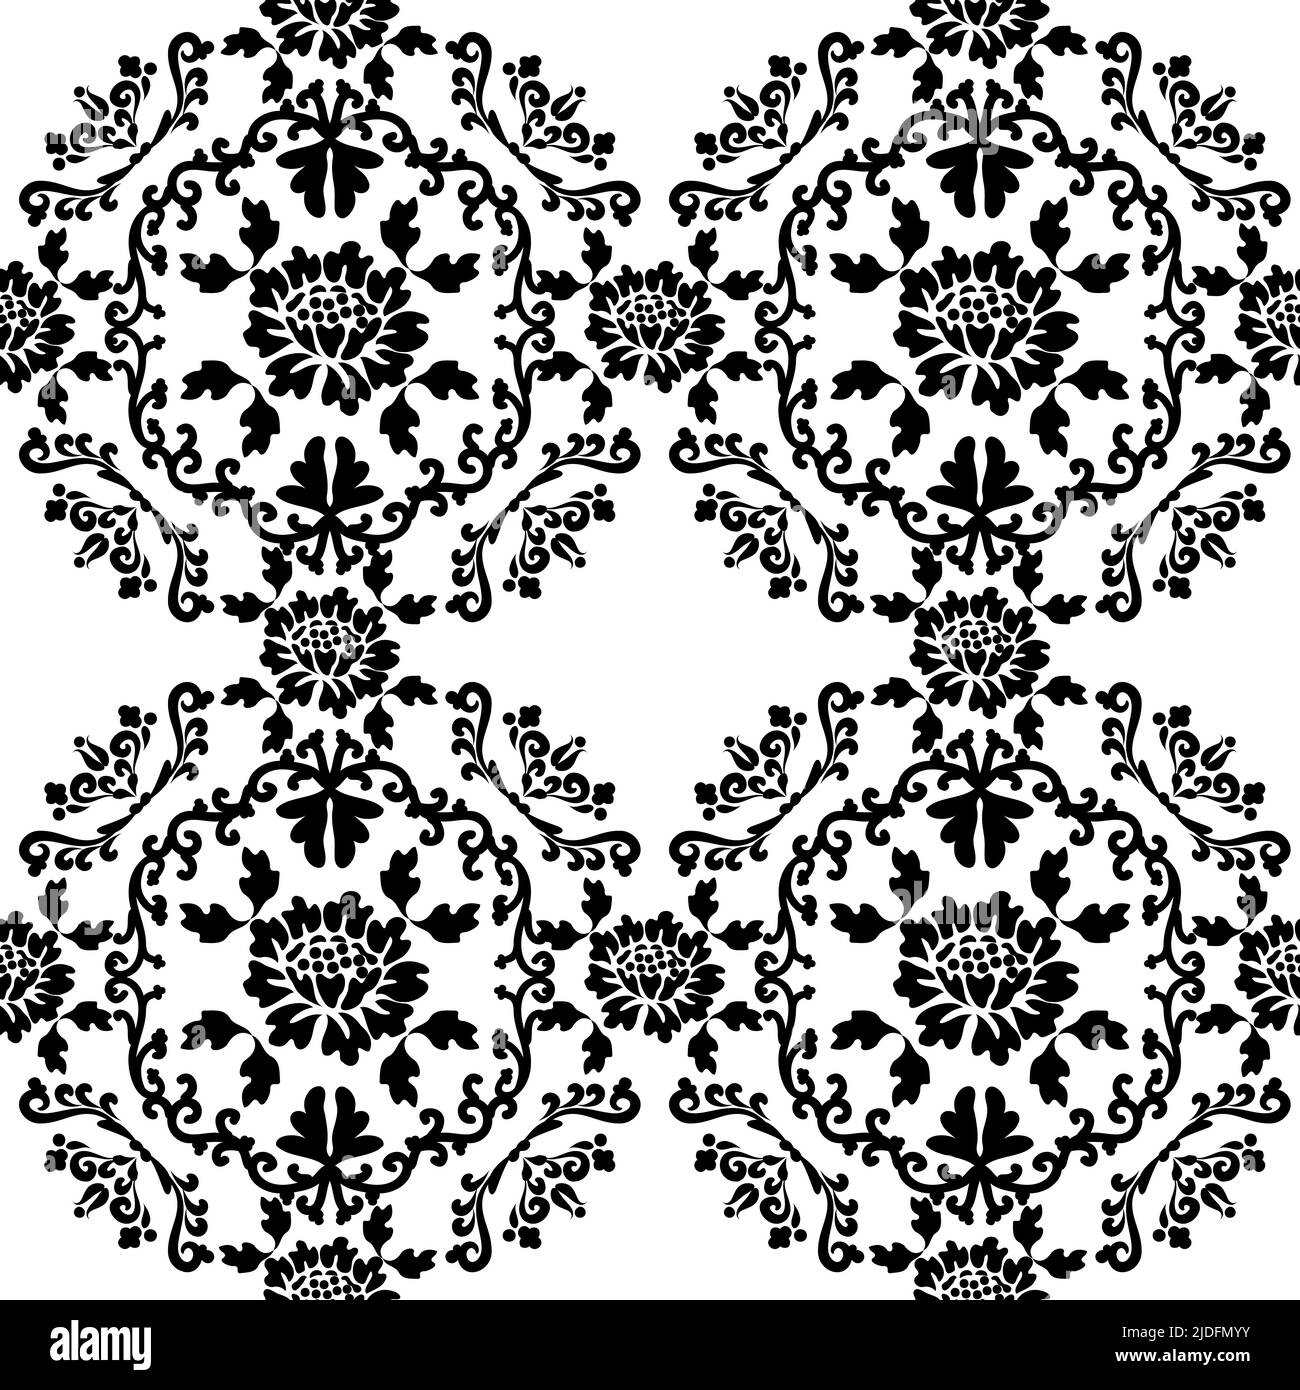 Nahtloses, altmodisches Blumenmuster. Vector viktorianischen Ornament mit Blumen für Stoff-Design, Keramikfliesen oder Tapete. Stock Vektor